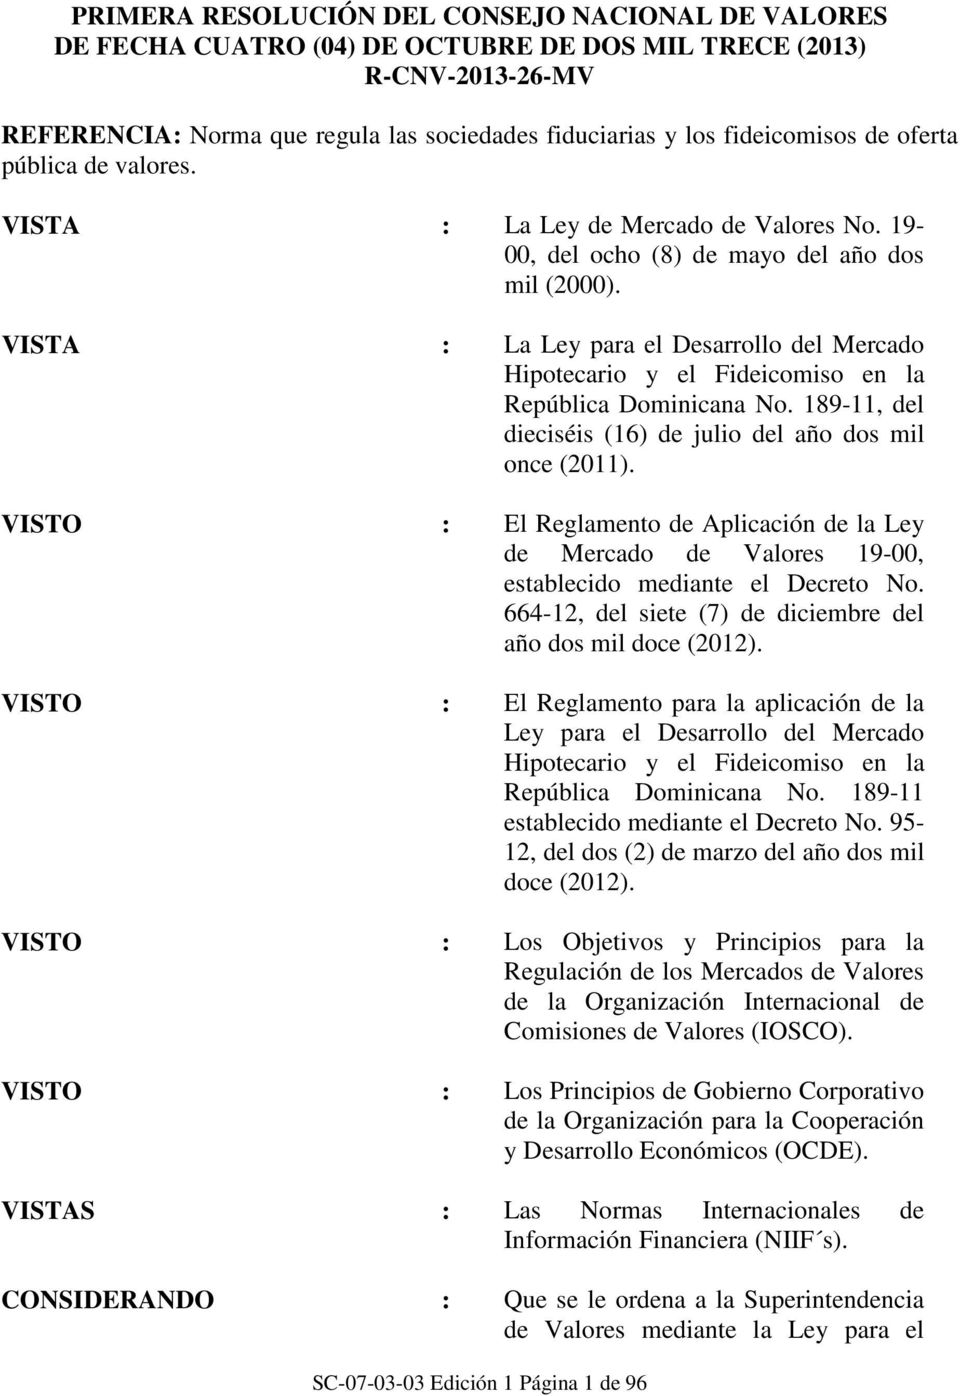 VISTA : La Ley para el Desarrollo del Mercado Hipotecario y el Fideicomiso en la República Dominicana No. 189-11, del dieciséis (16) de julio del año dos mil once (2011).